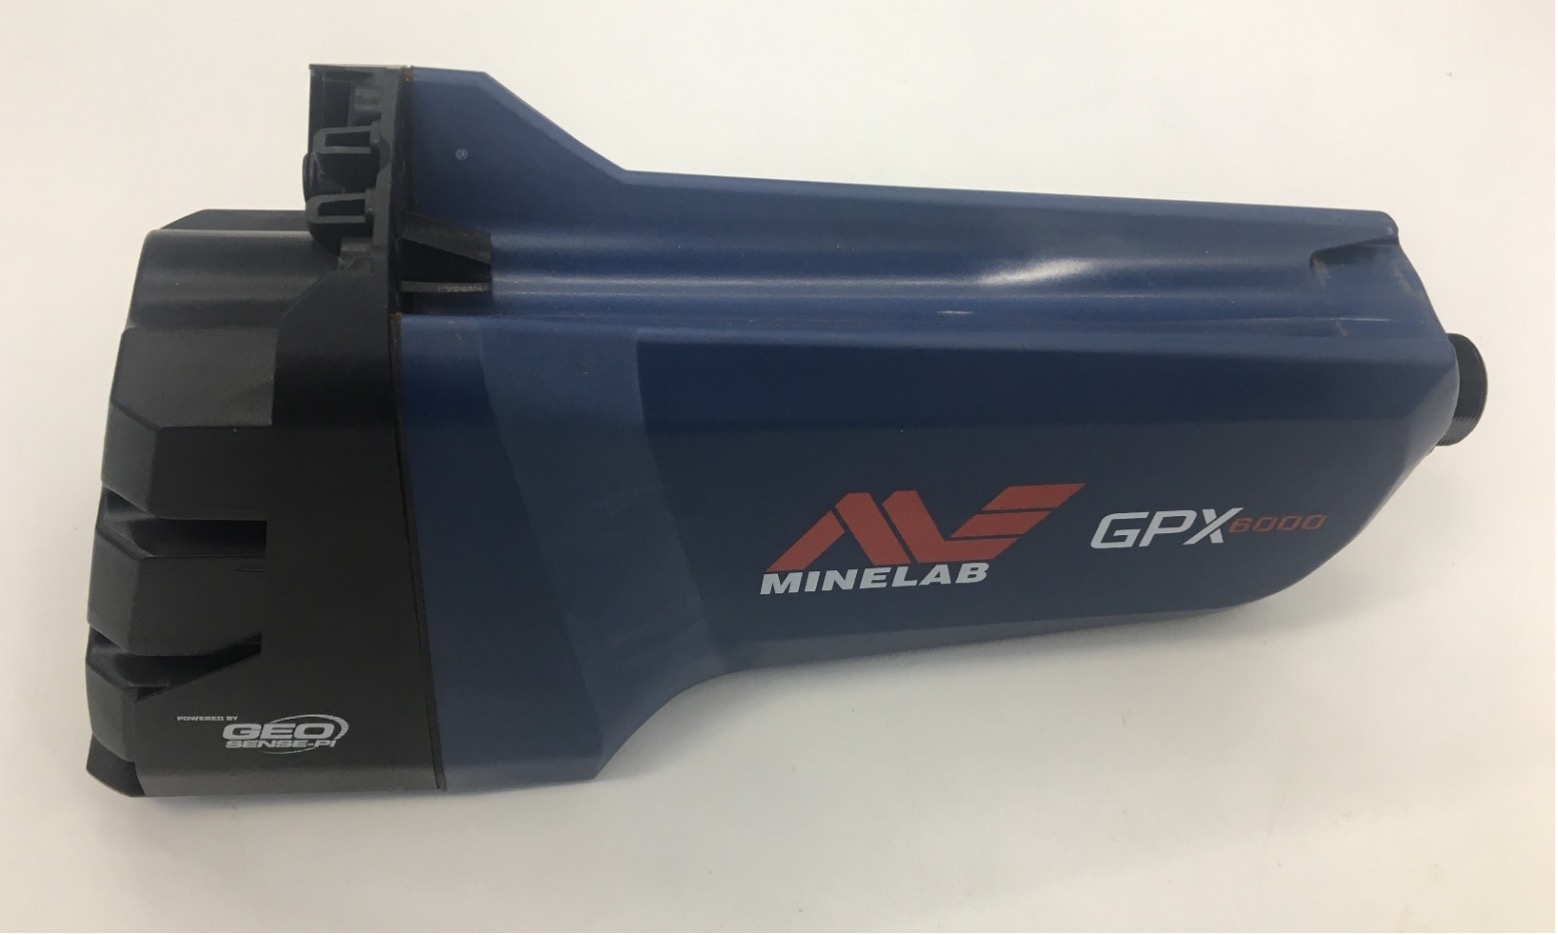 Détecteur d'or Minelab GPX 6000